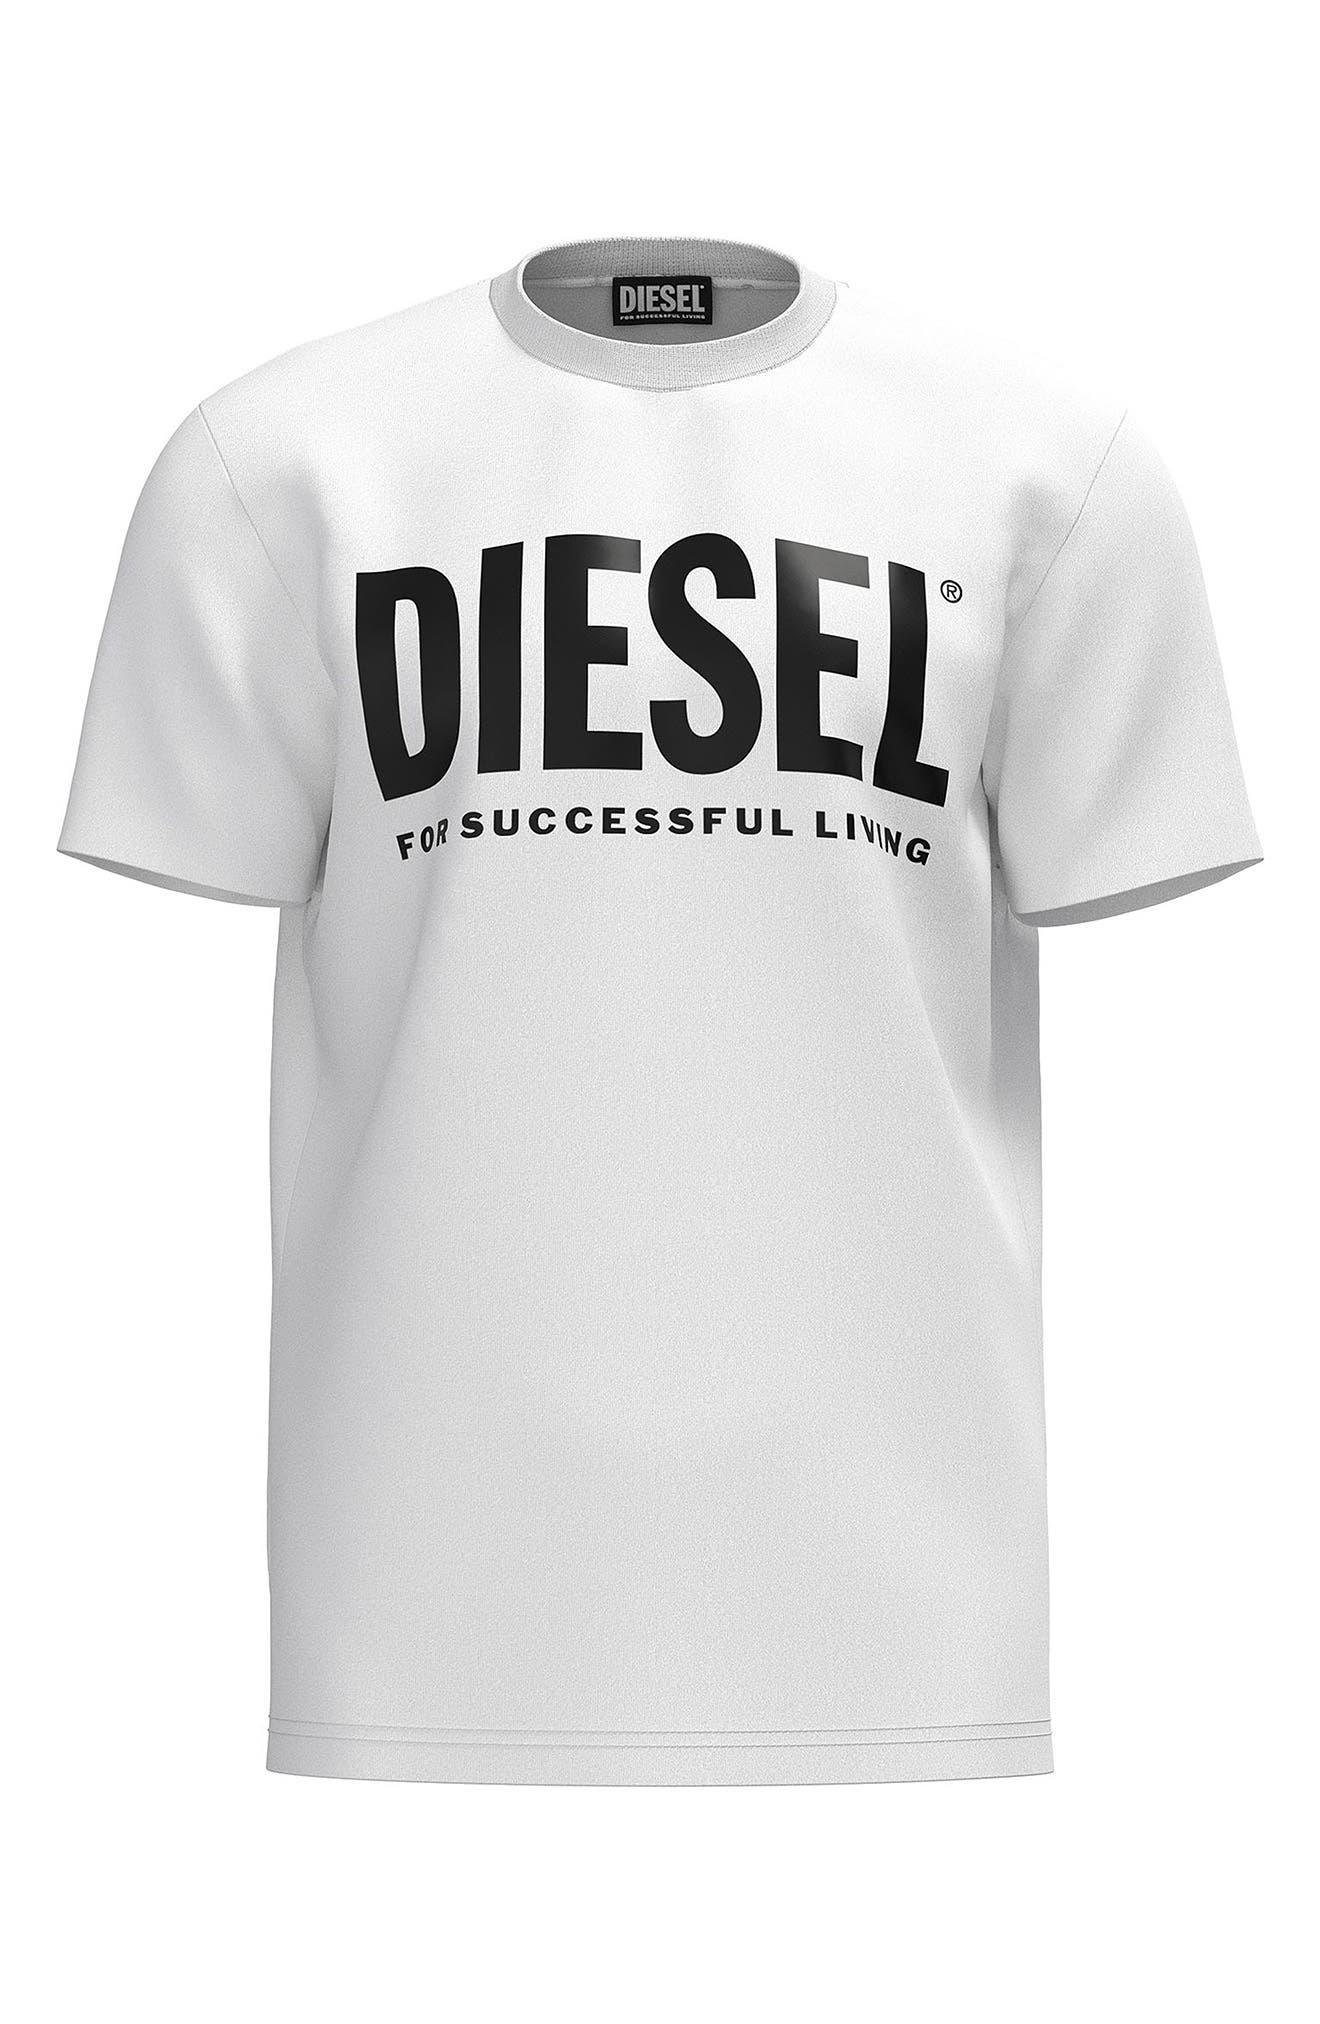 DIESEL T-diegos Cotton Graphic Logo Tee in White for Men | Lyst